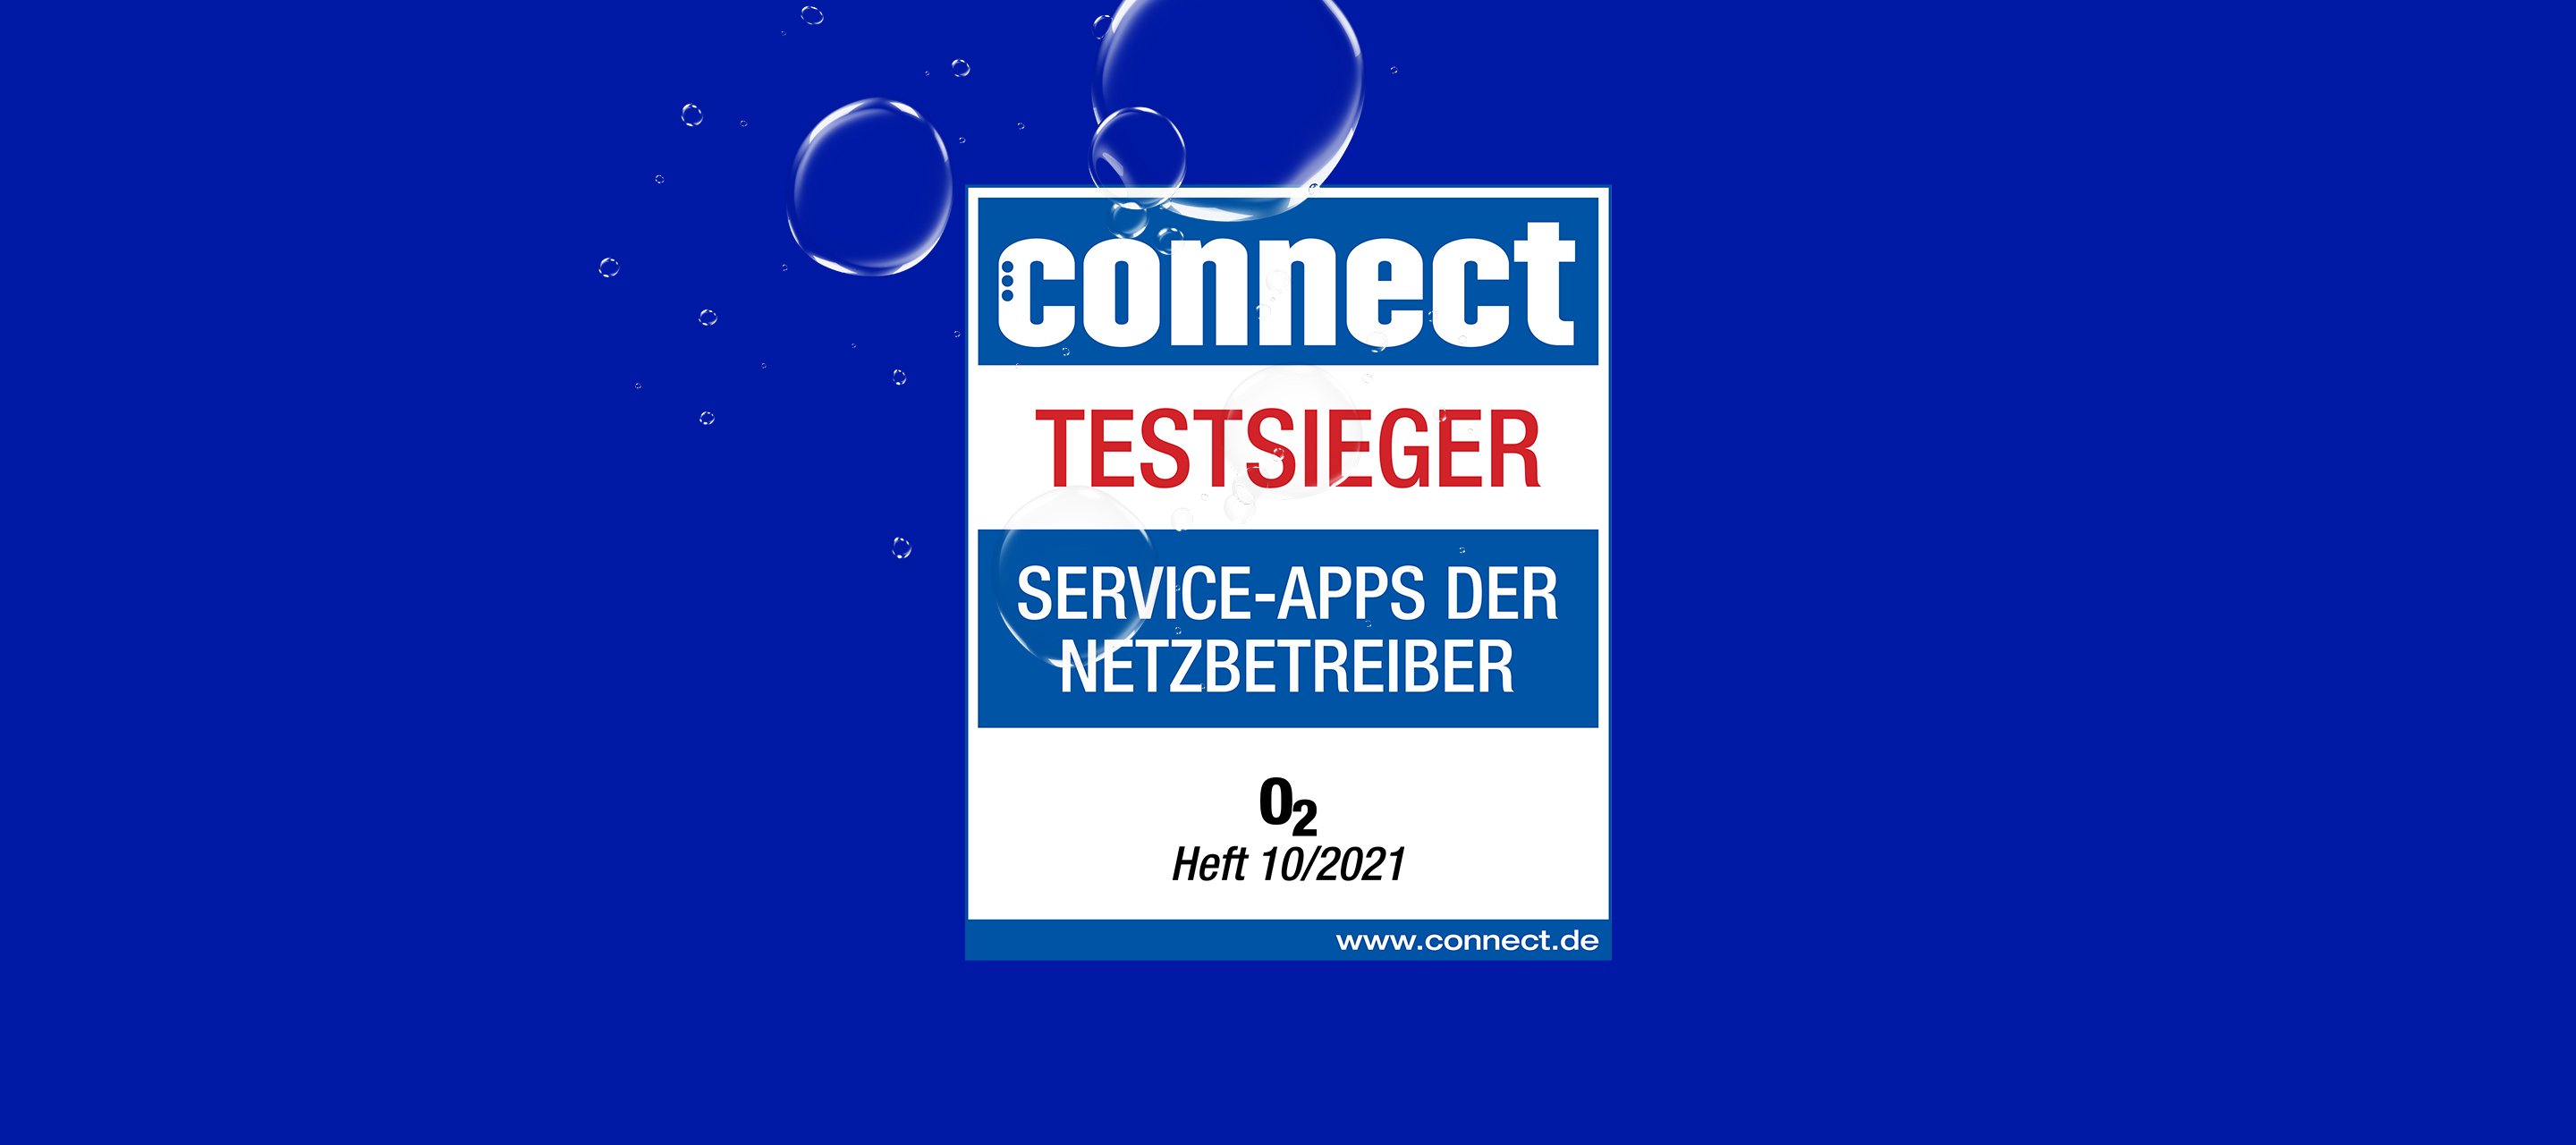 Mein O₂ App gewinnt beim connect Service-App Test der Mobilfunkanbieter 2021